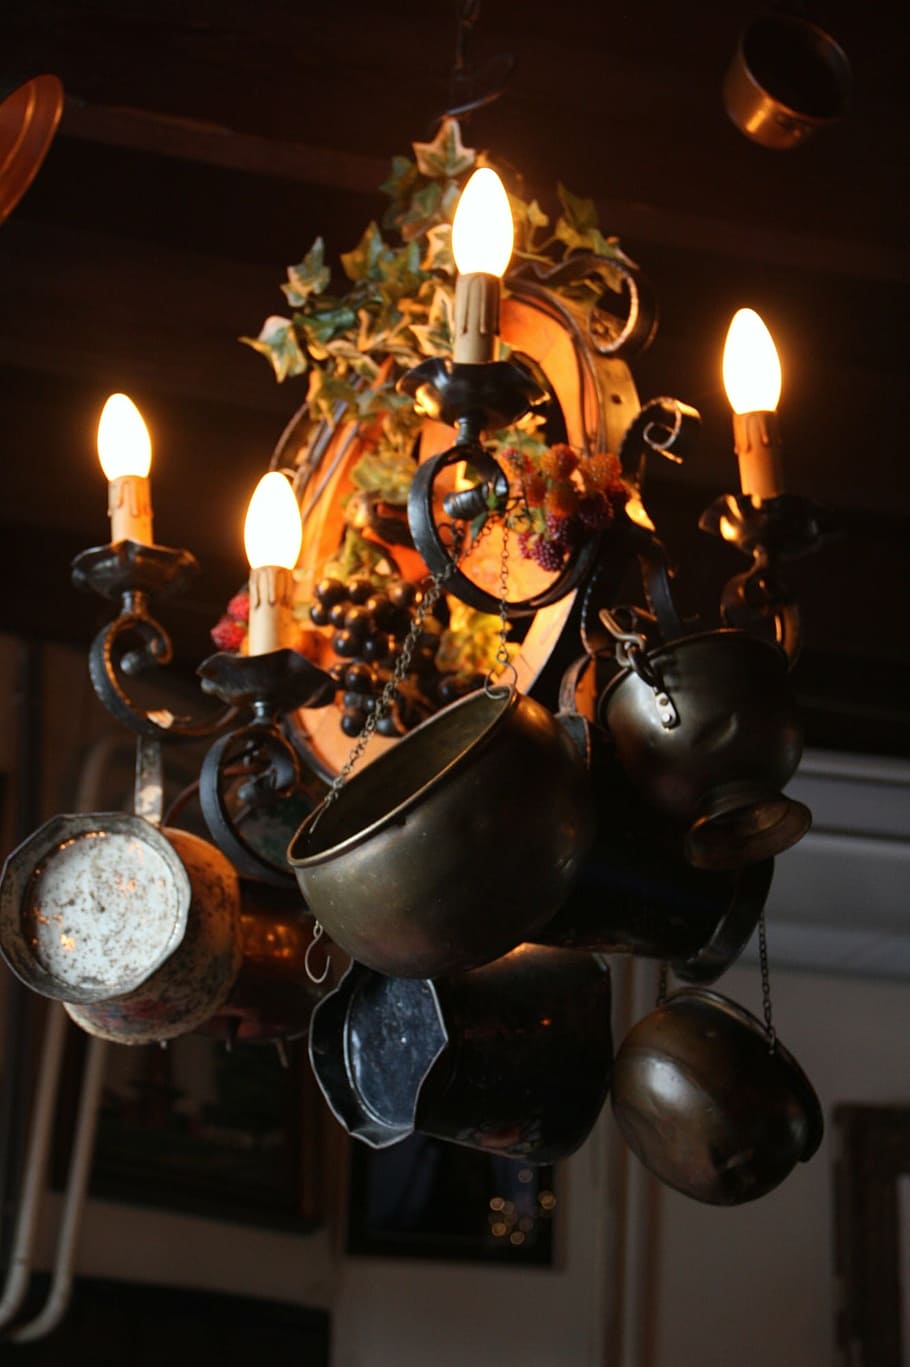 campana, timbre, vintage, símbolo, iluminado, quemado, fuego, equipo de iluminación, llama, fuego - fenómeno natural